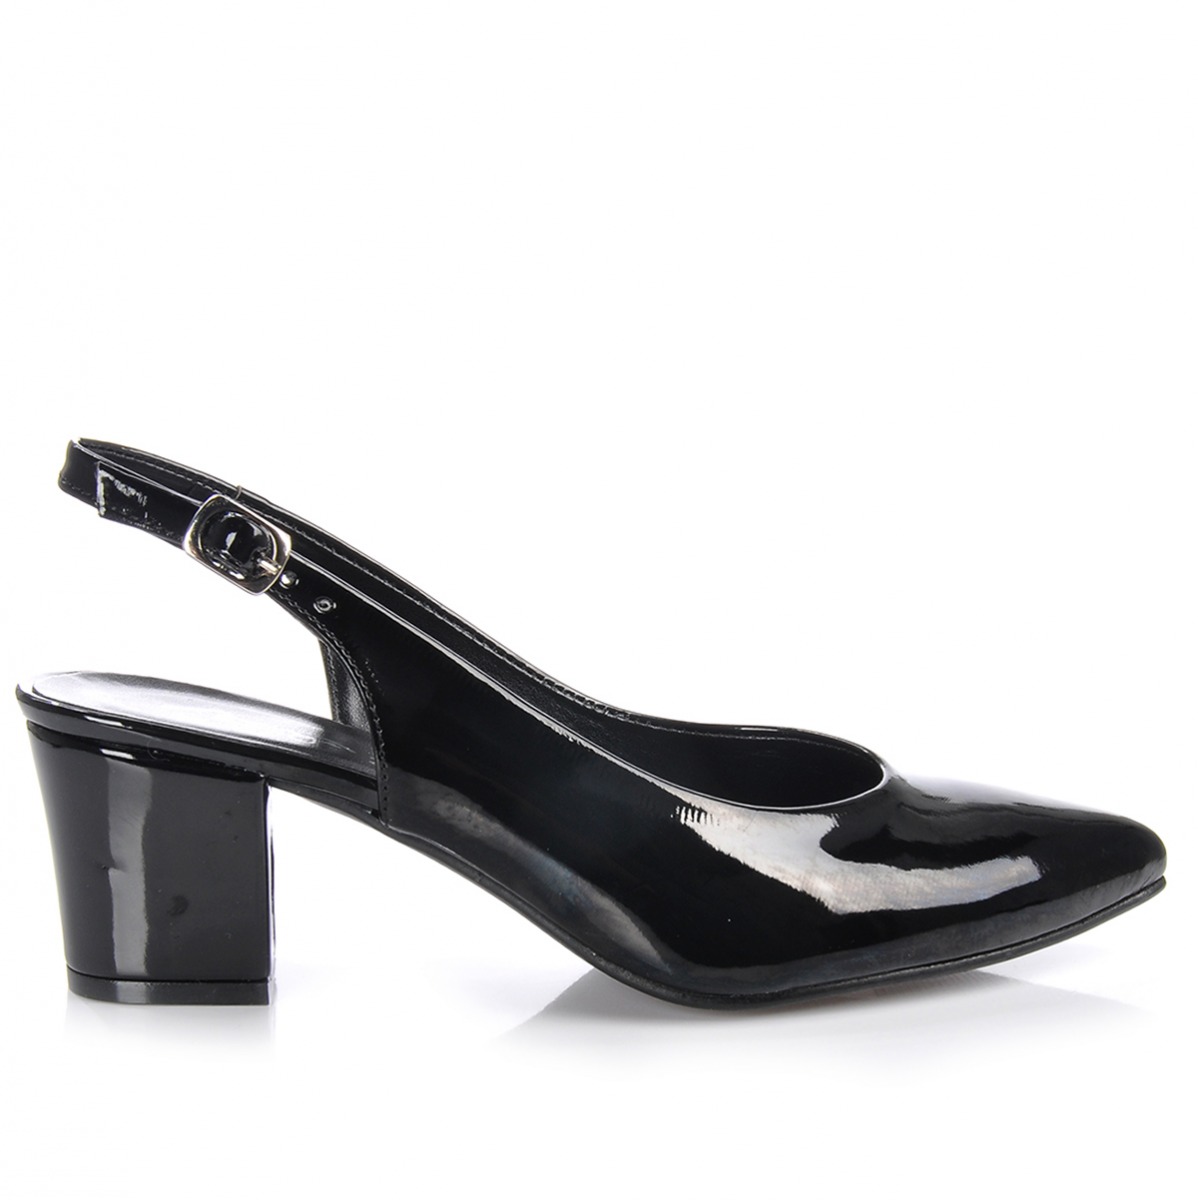 Flo Kadın  Siyah-Rugan Klasik Topuklu Ayakkabı VZN-233Y. 3